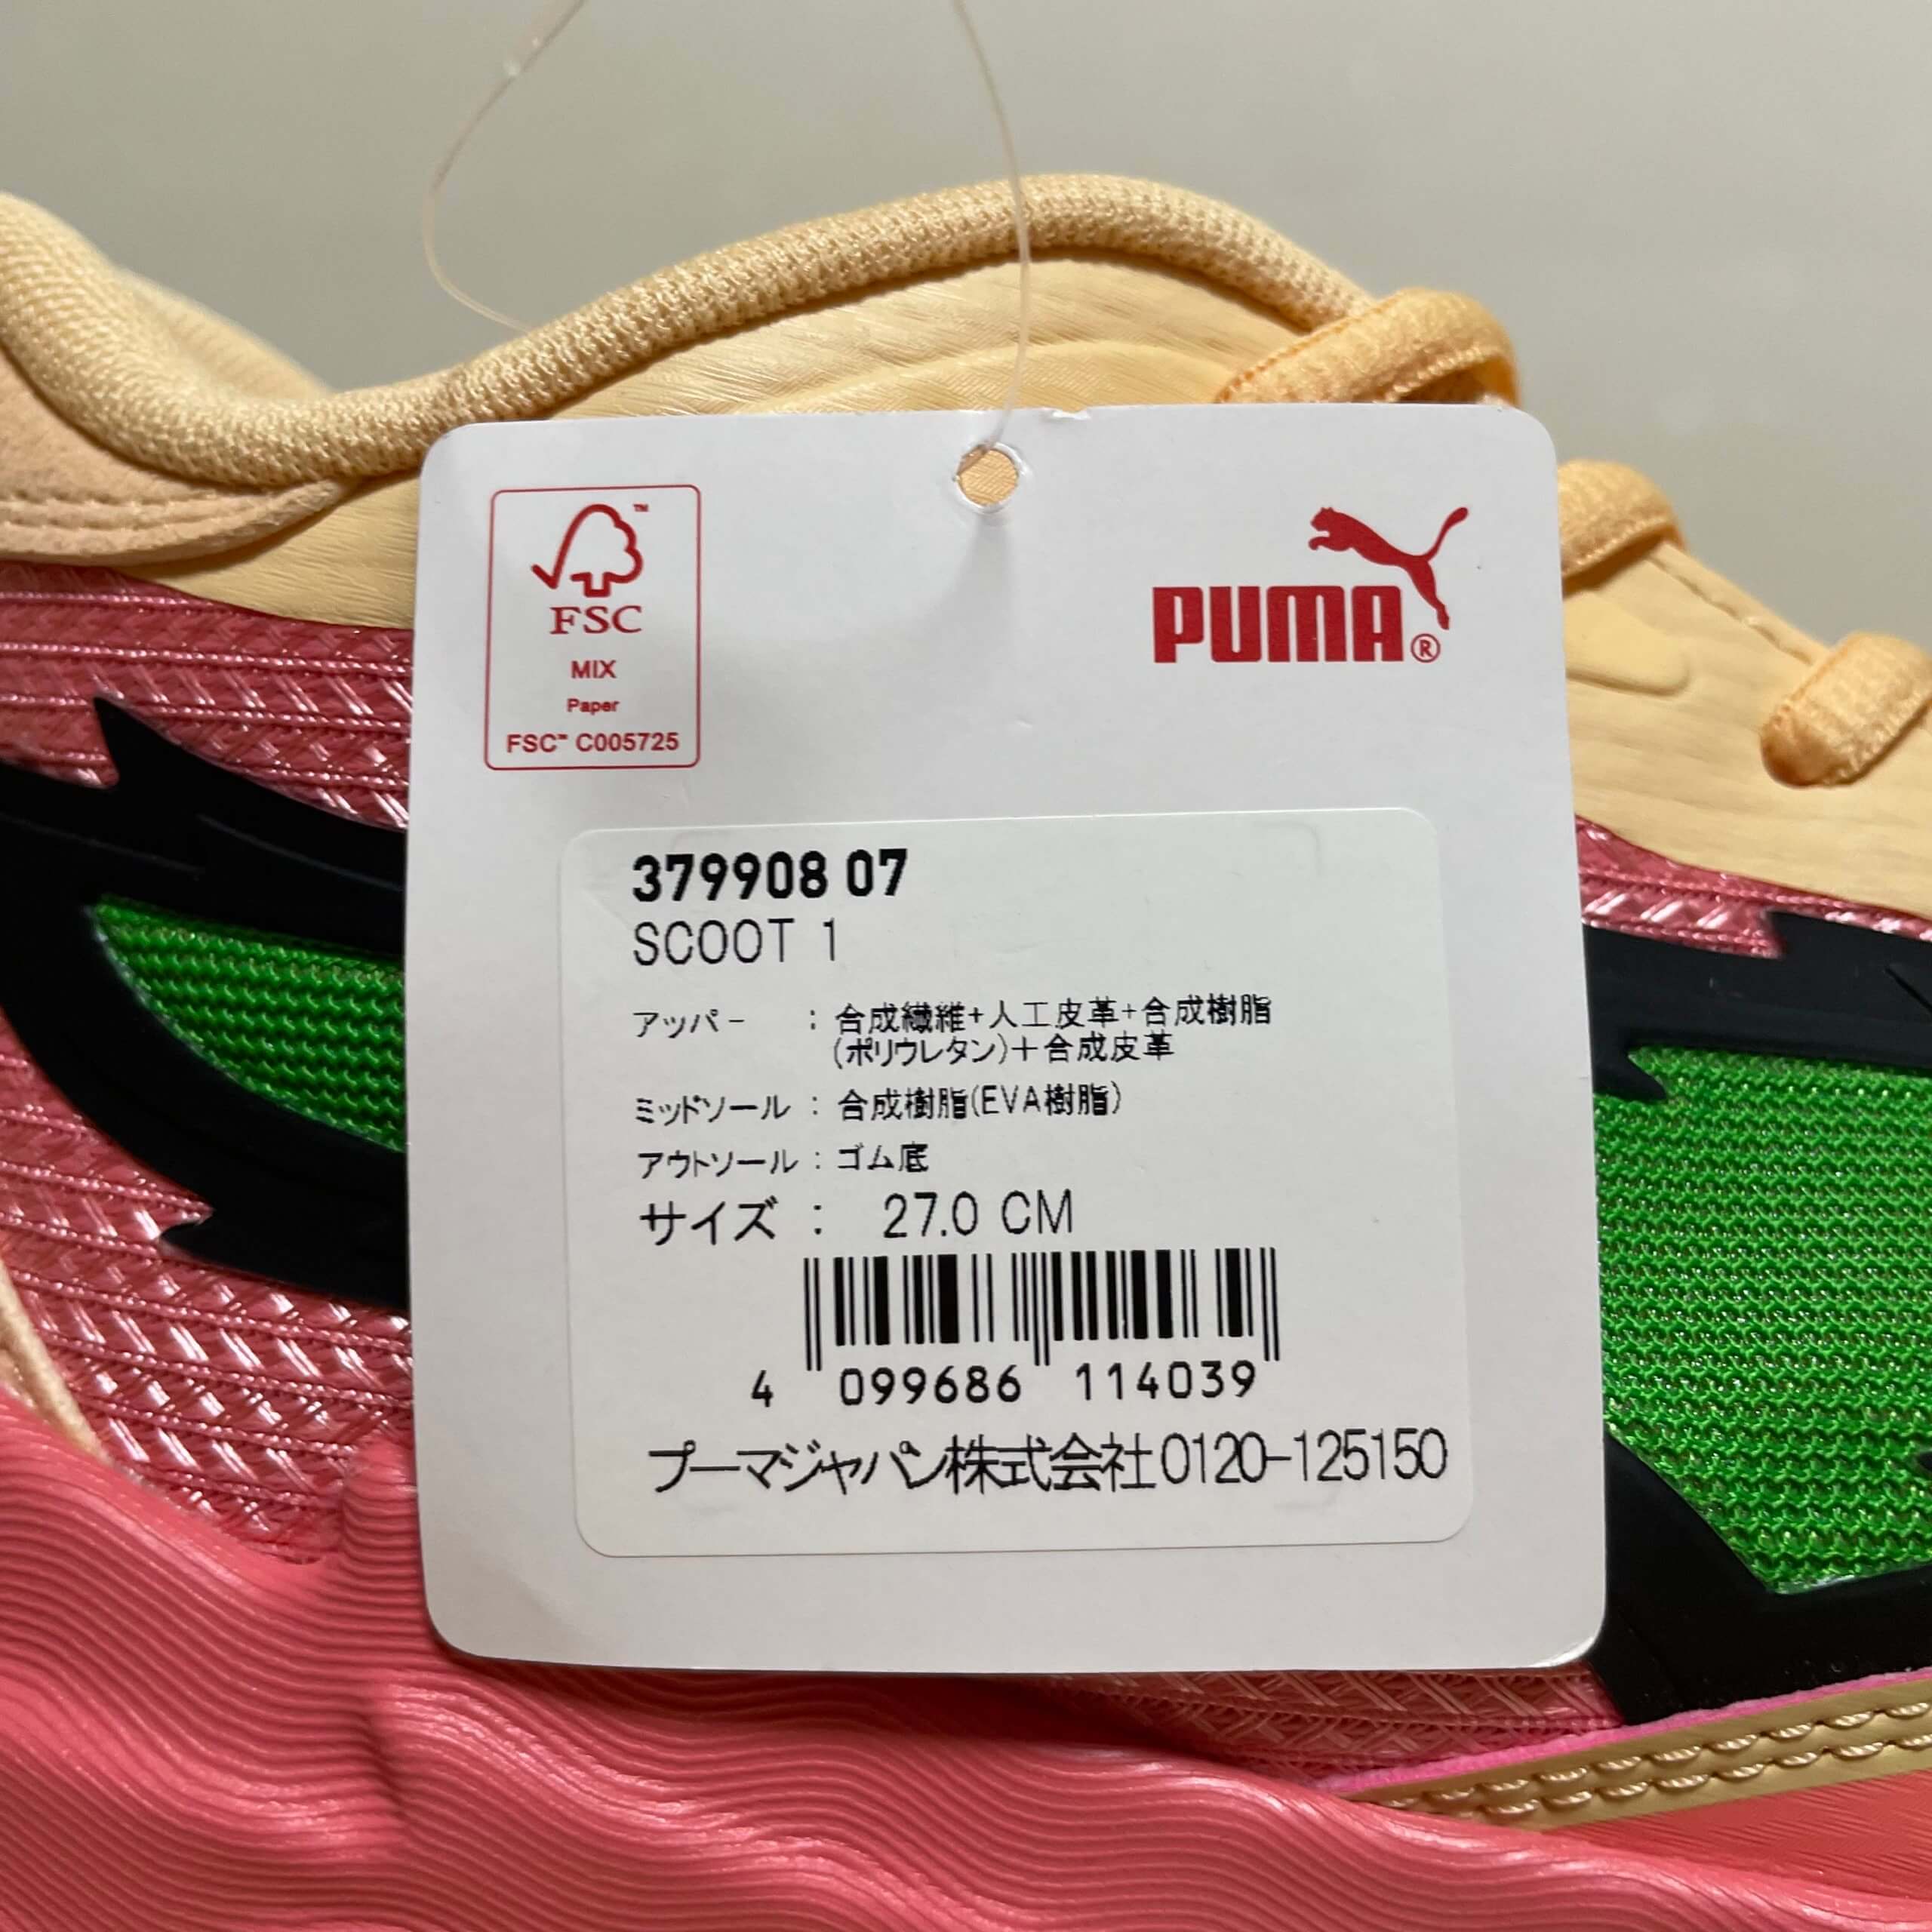 感謝価格 PUMA Performance SCOOT 1 PUMA プーマ スクート1 Puma